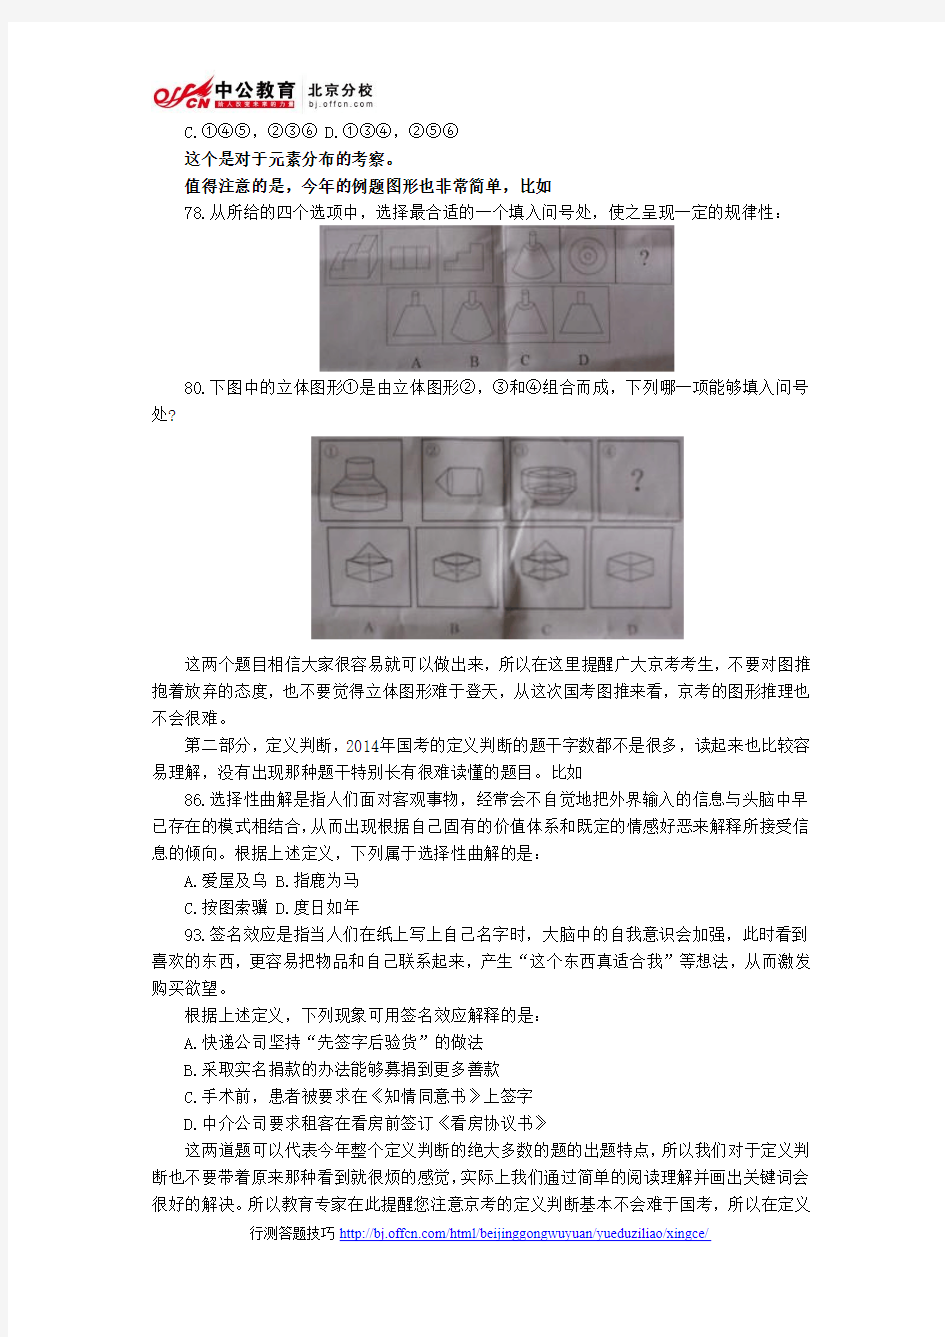 2014年北京公务员考试行测答题技巧：2014国考行测对京考的启示